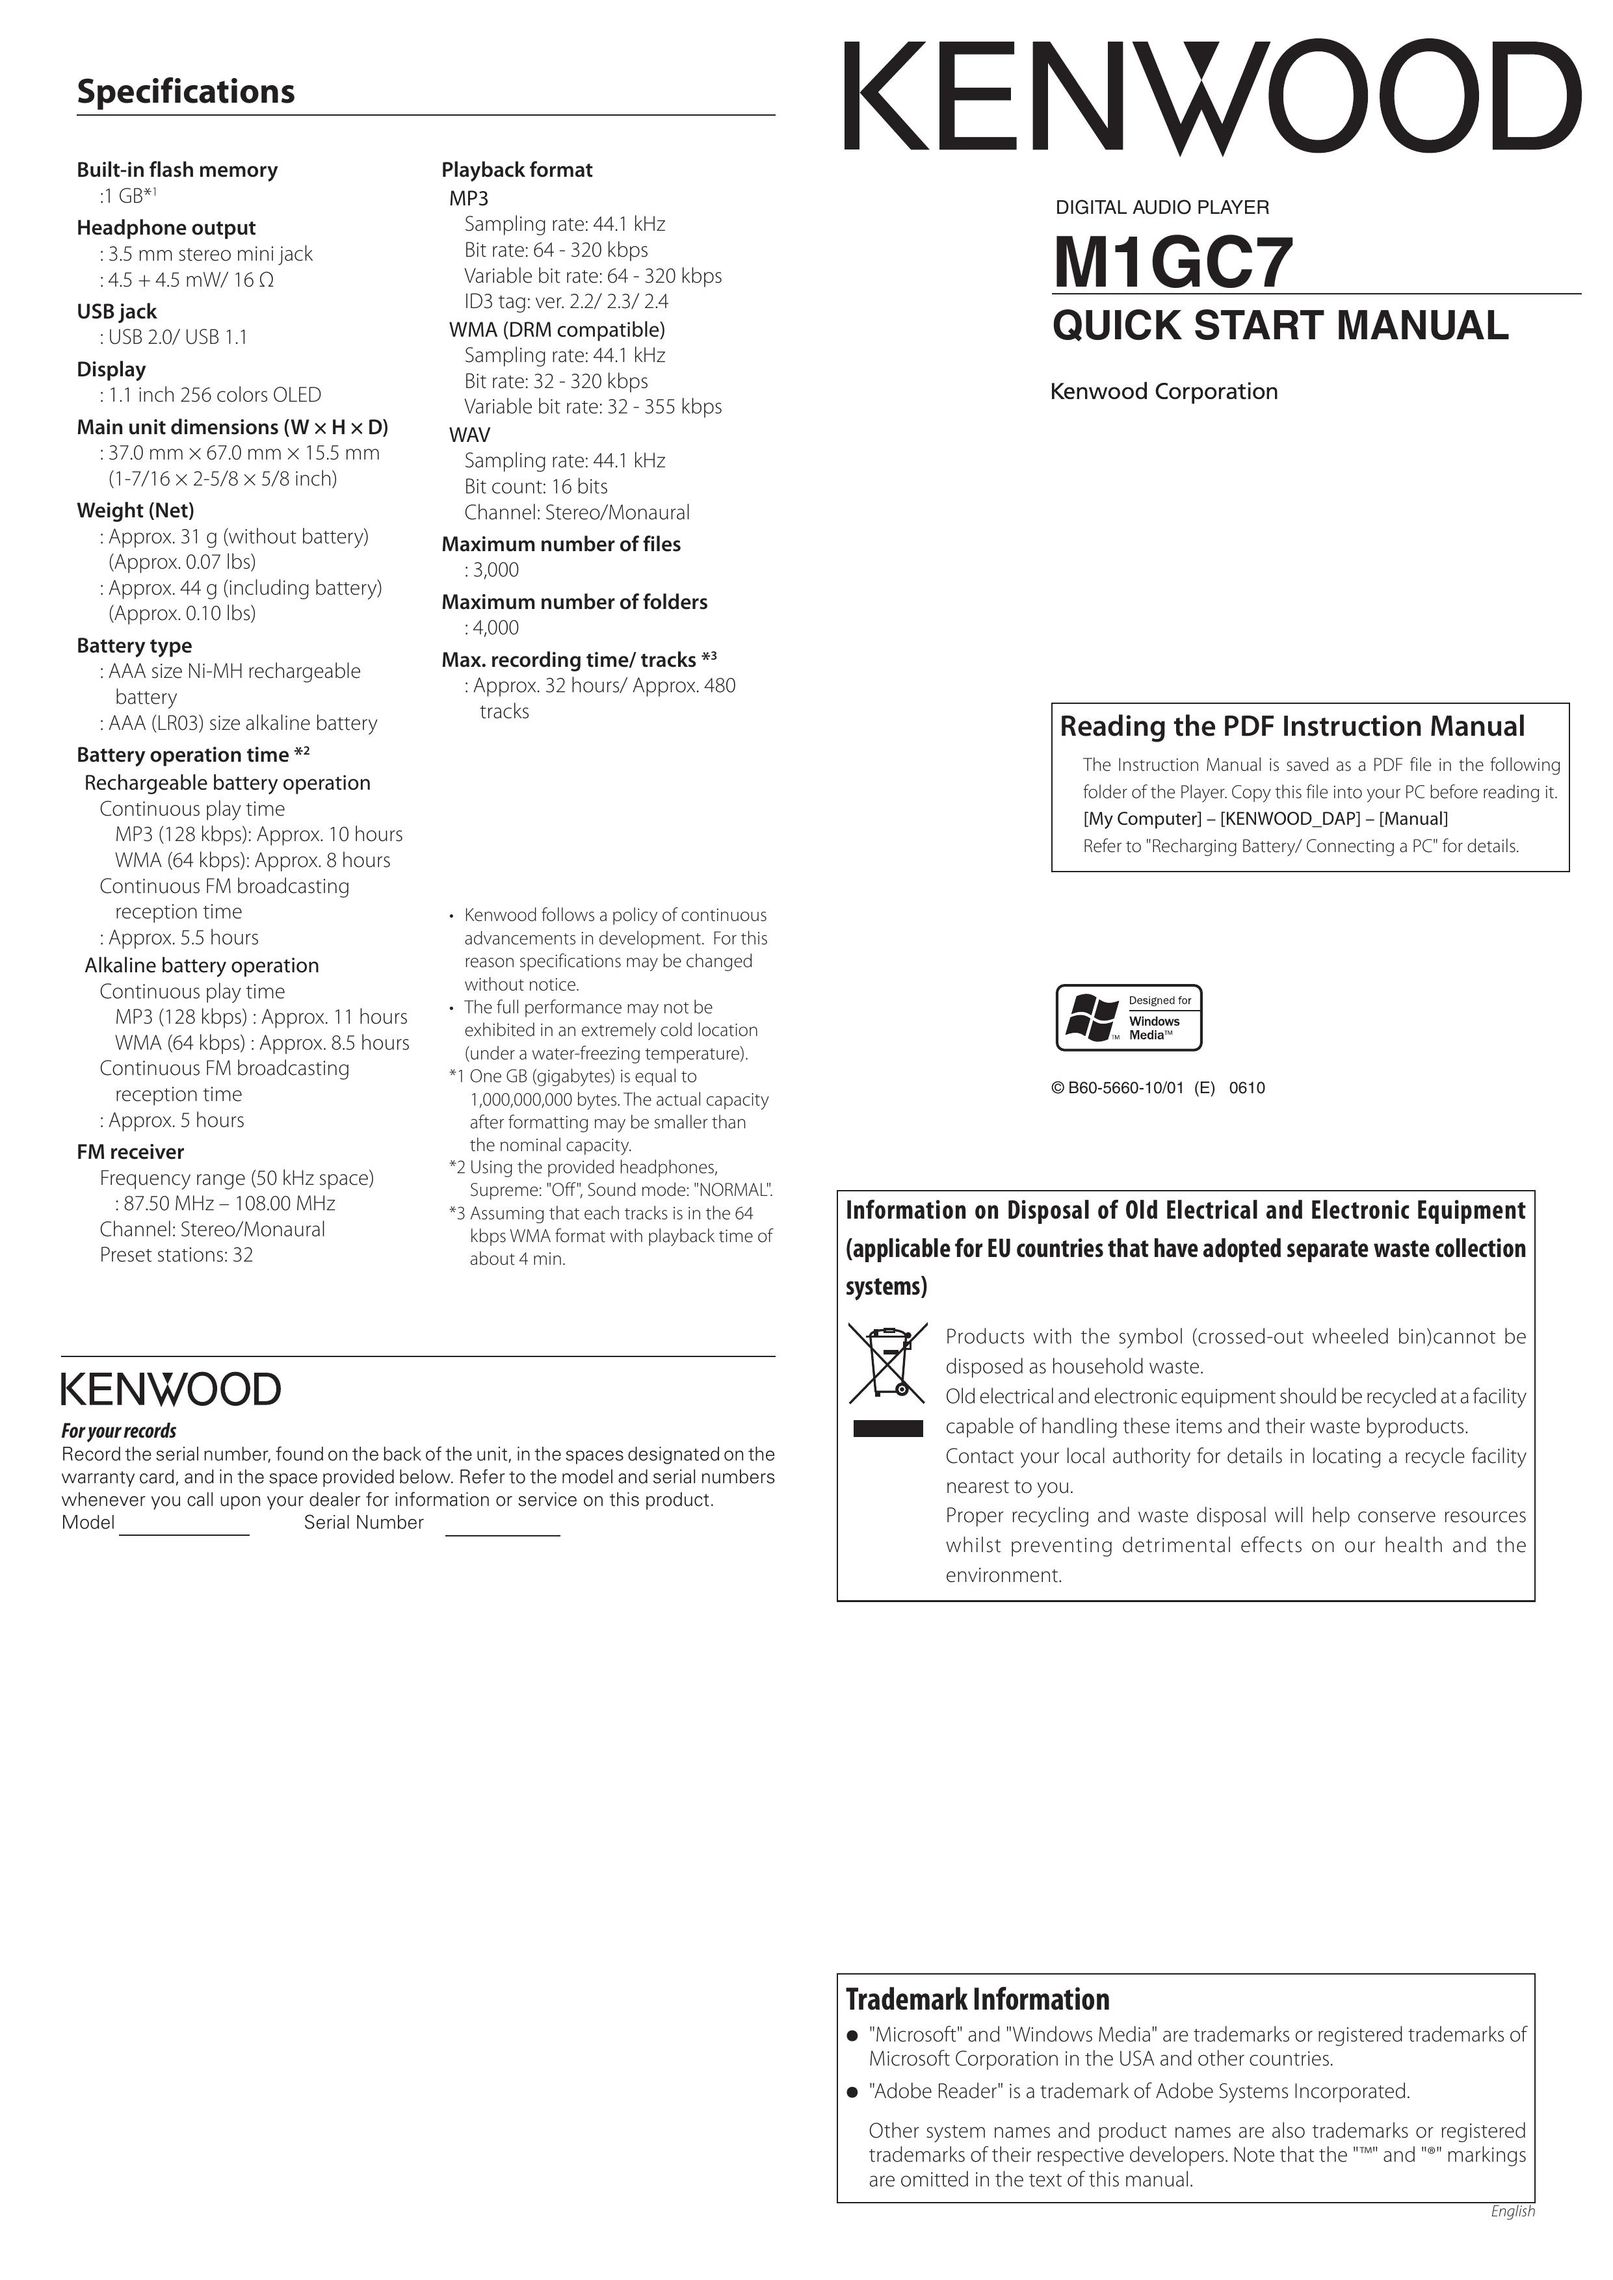 Kenwood M1GC7 MP3 Player User Manual